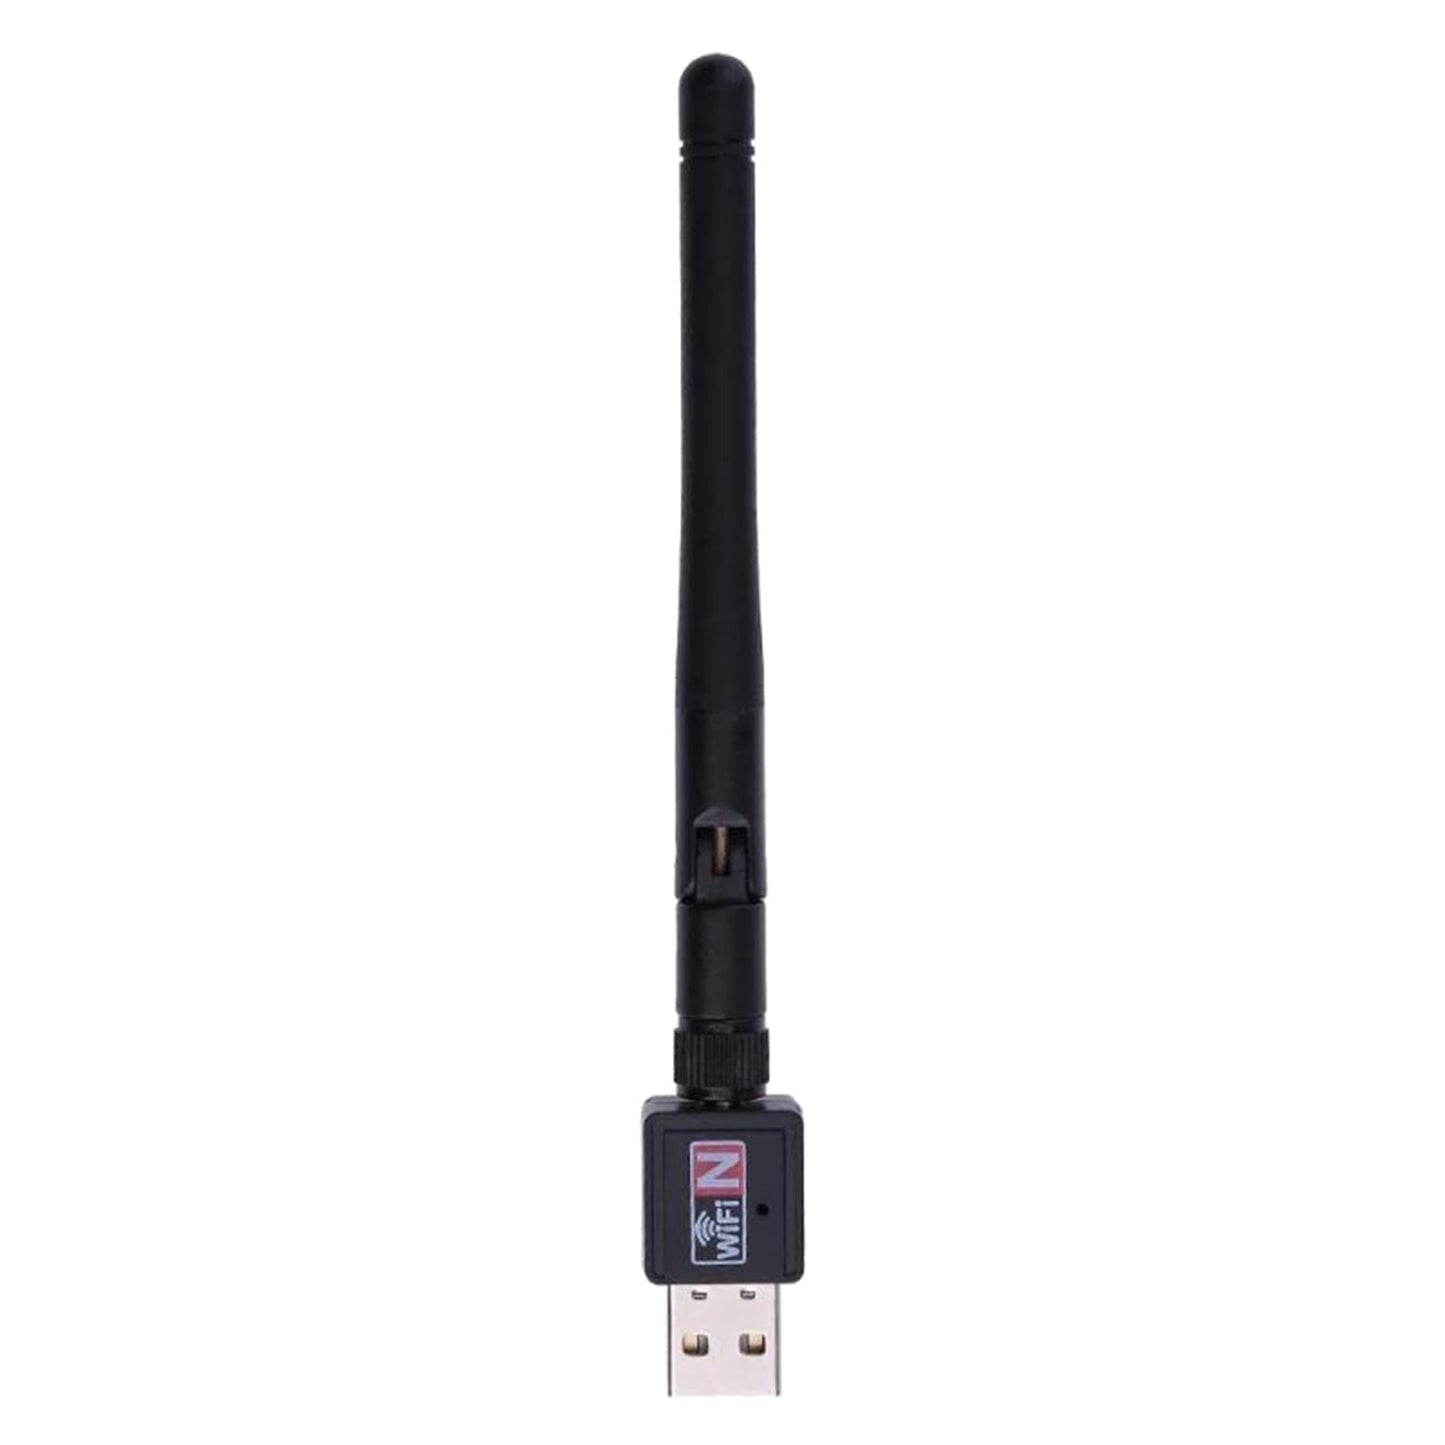 Adaptateur réseau WiFi USB sans fil 300 Mbps 802.11n avec antenne pour Windows/XP/Mac